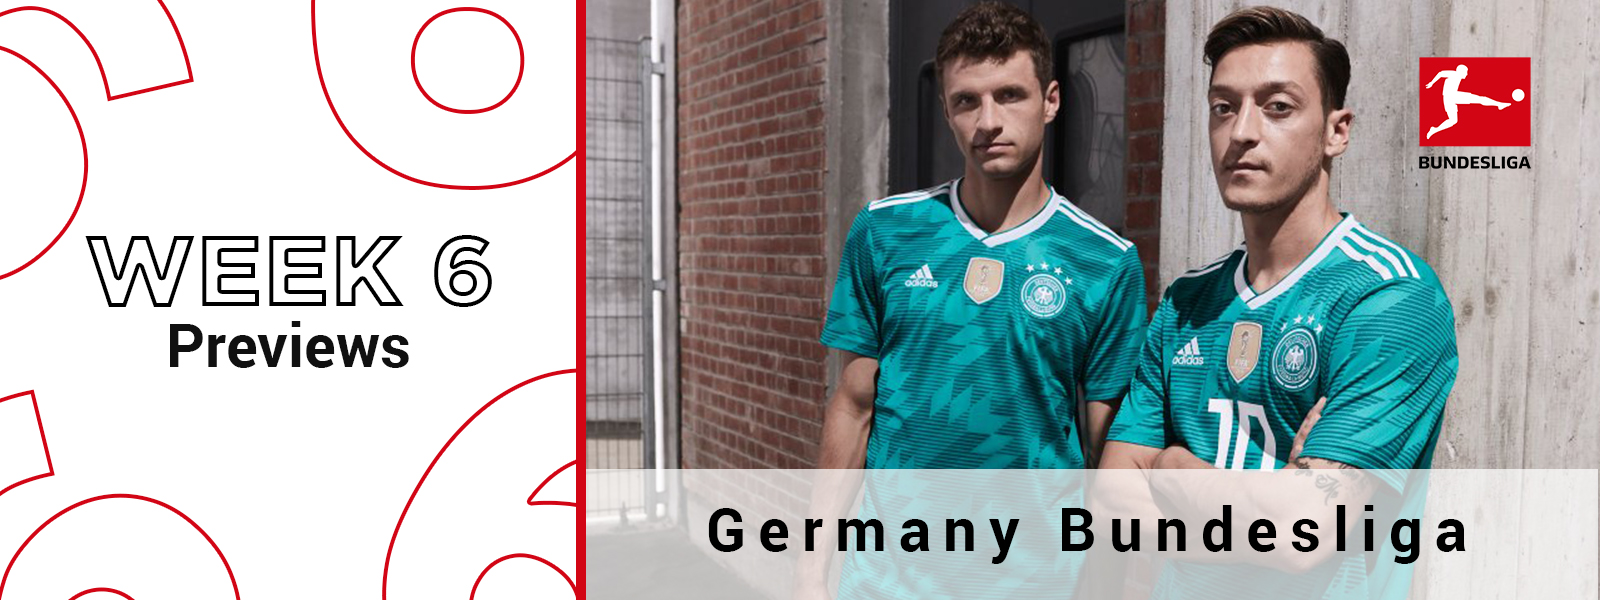 SoccerTipsters Blog | Germany Bundesliga Week 6 Previews